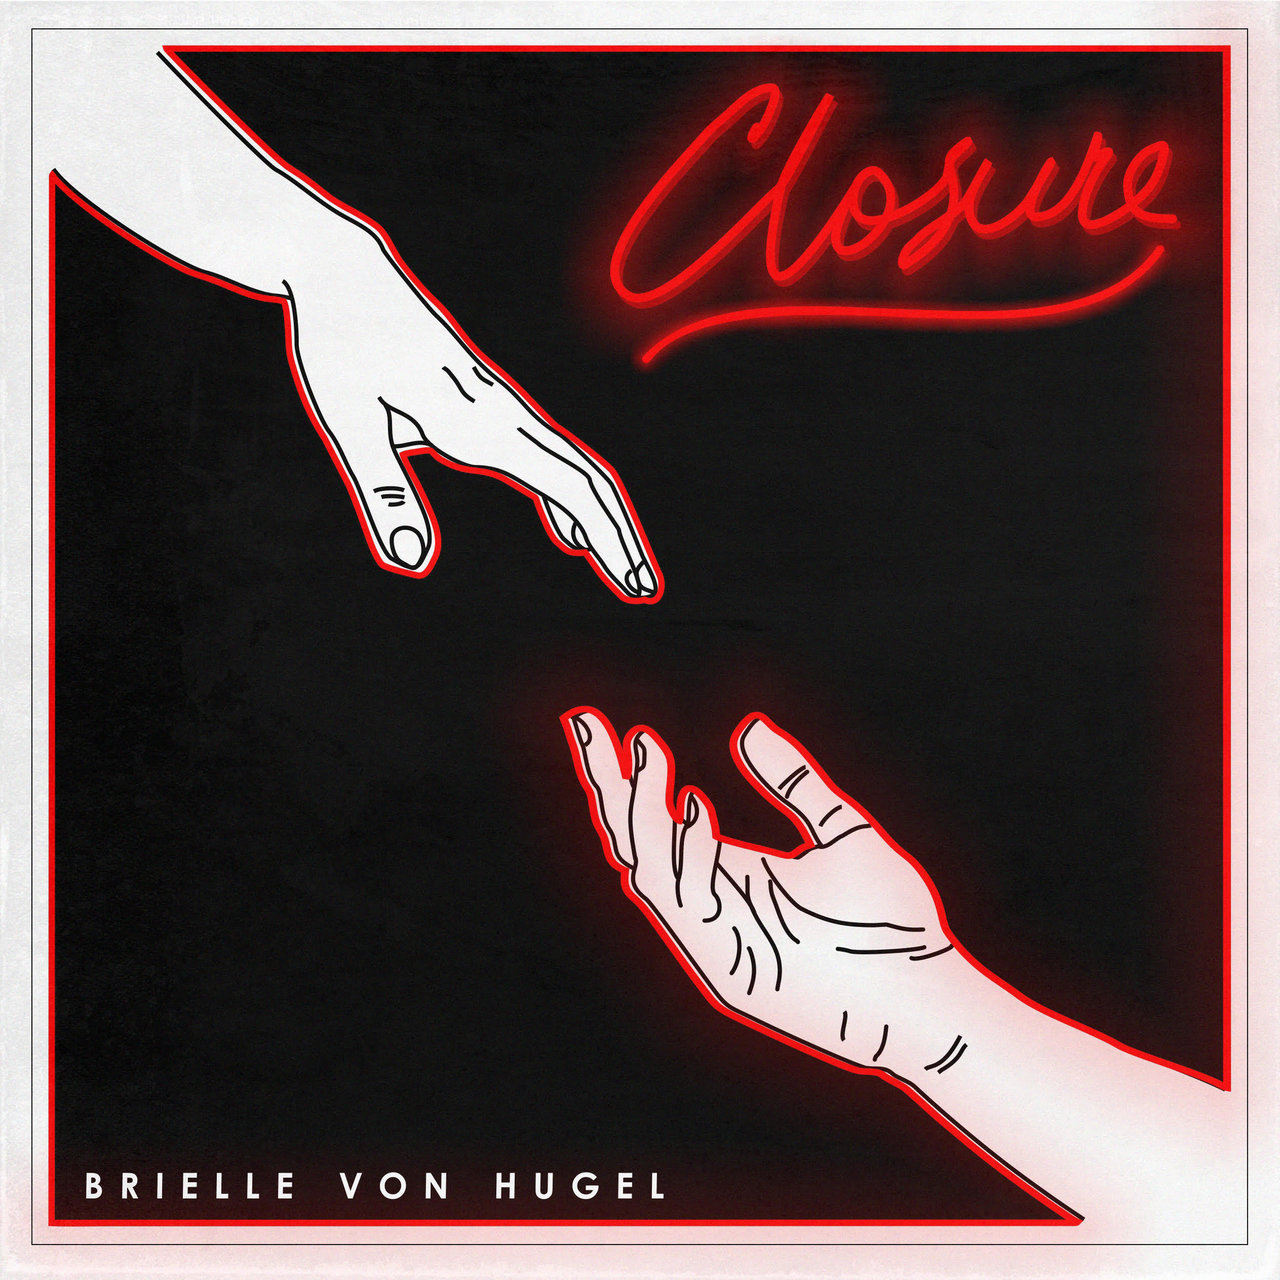 Brielle Von Hugel — Closure cover artwork